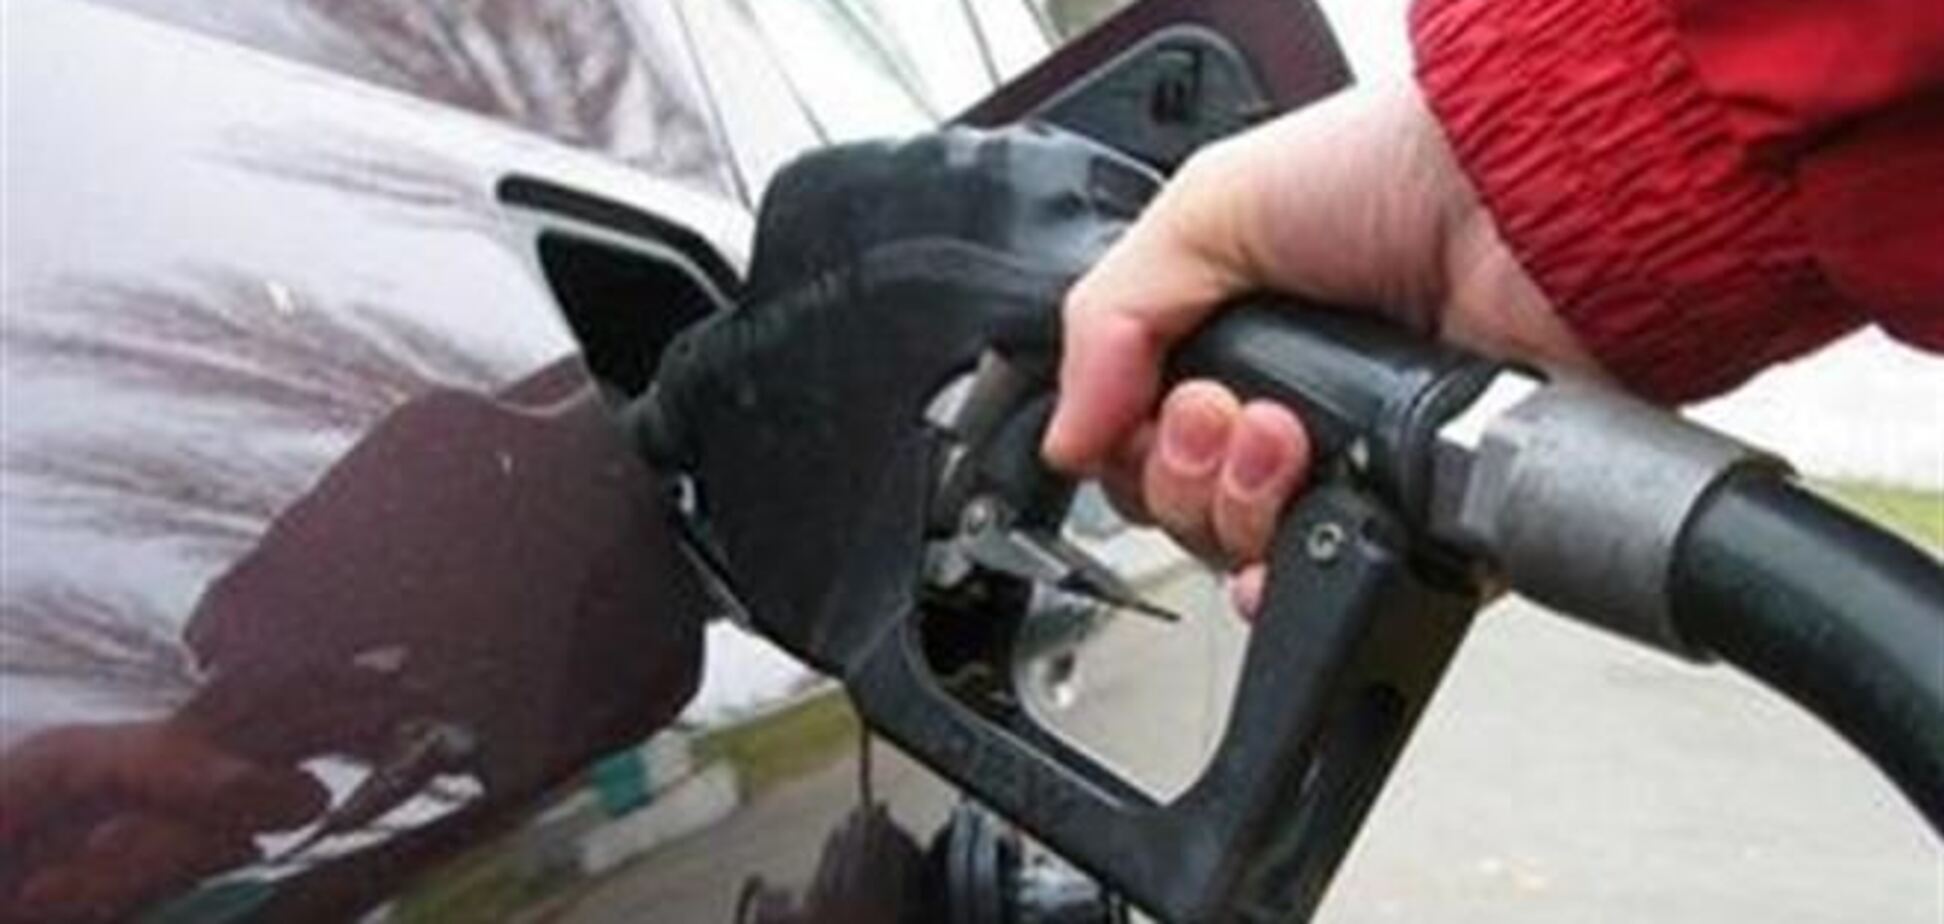 Цены на бензин повысились на гривню